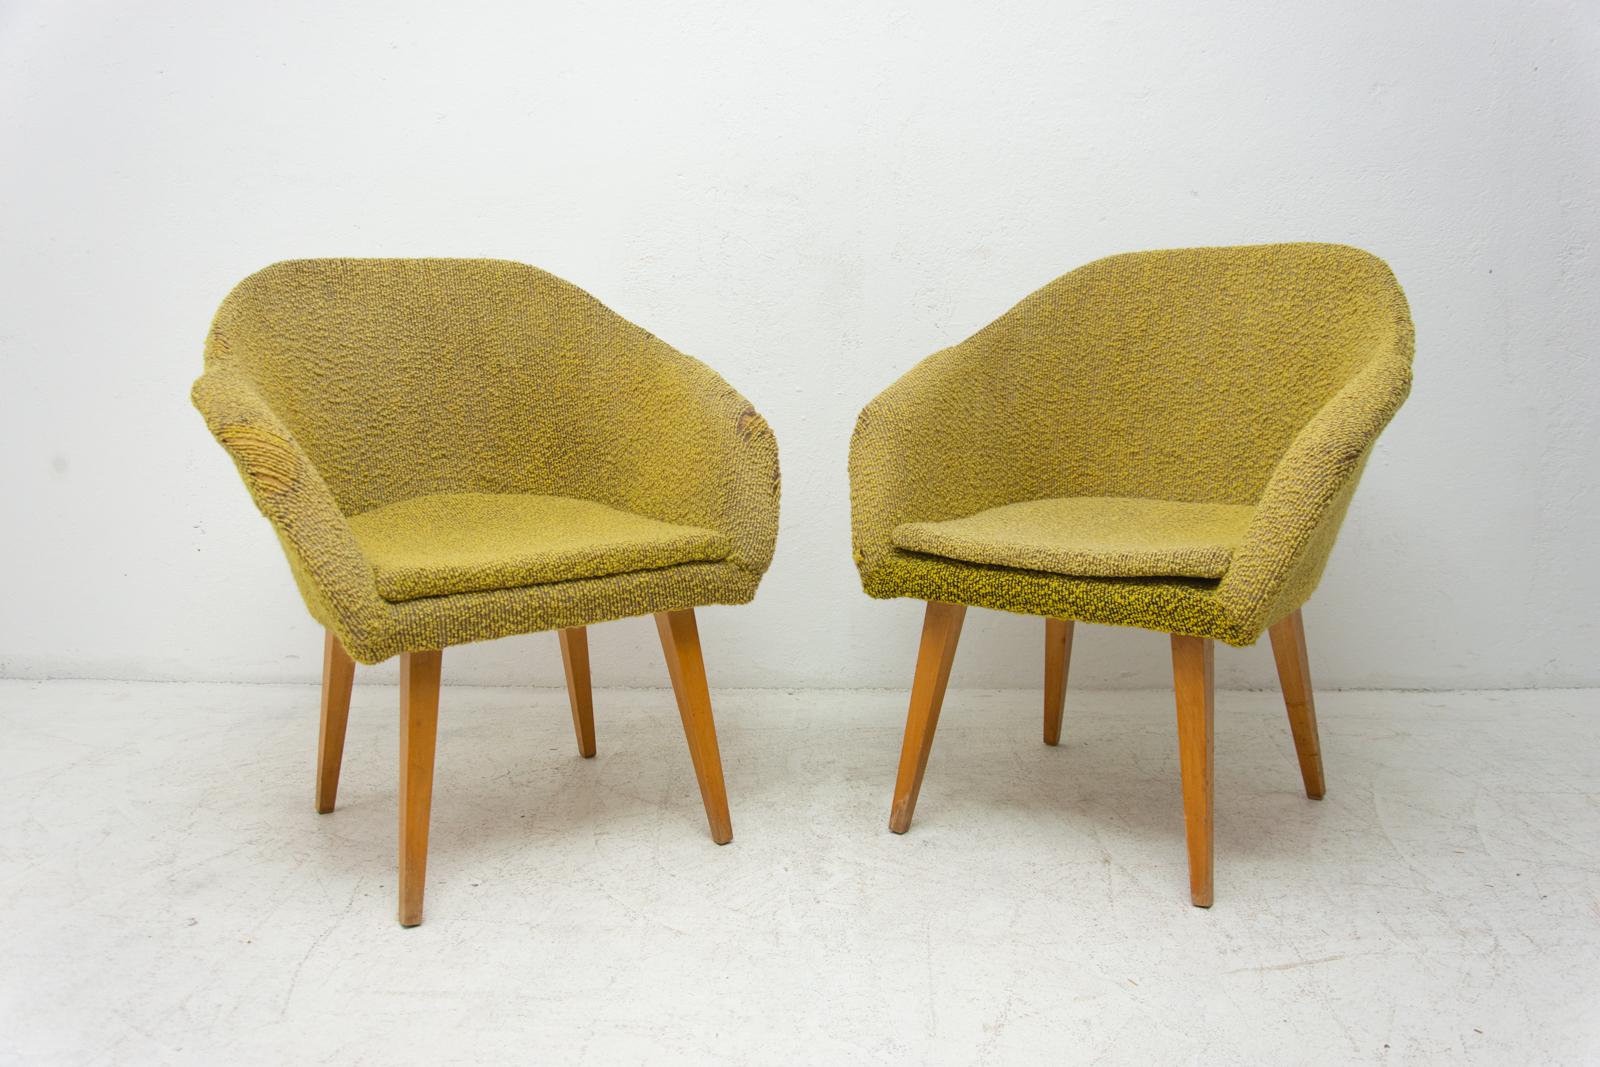 Ces chaises longues en forme de coquillage sont un exemple intéressant de mobilier tchécoslovaque du milieu du siècle. Ils ont été conçus par Miroslav Navratil ou František Jirák. Ils sont associés à la 